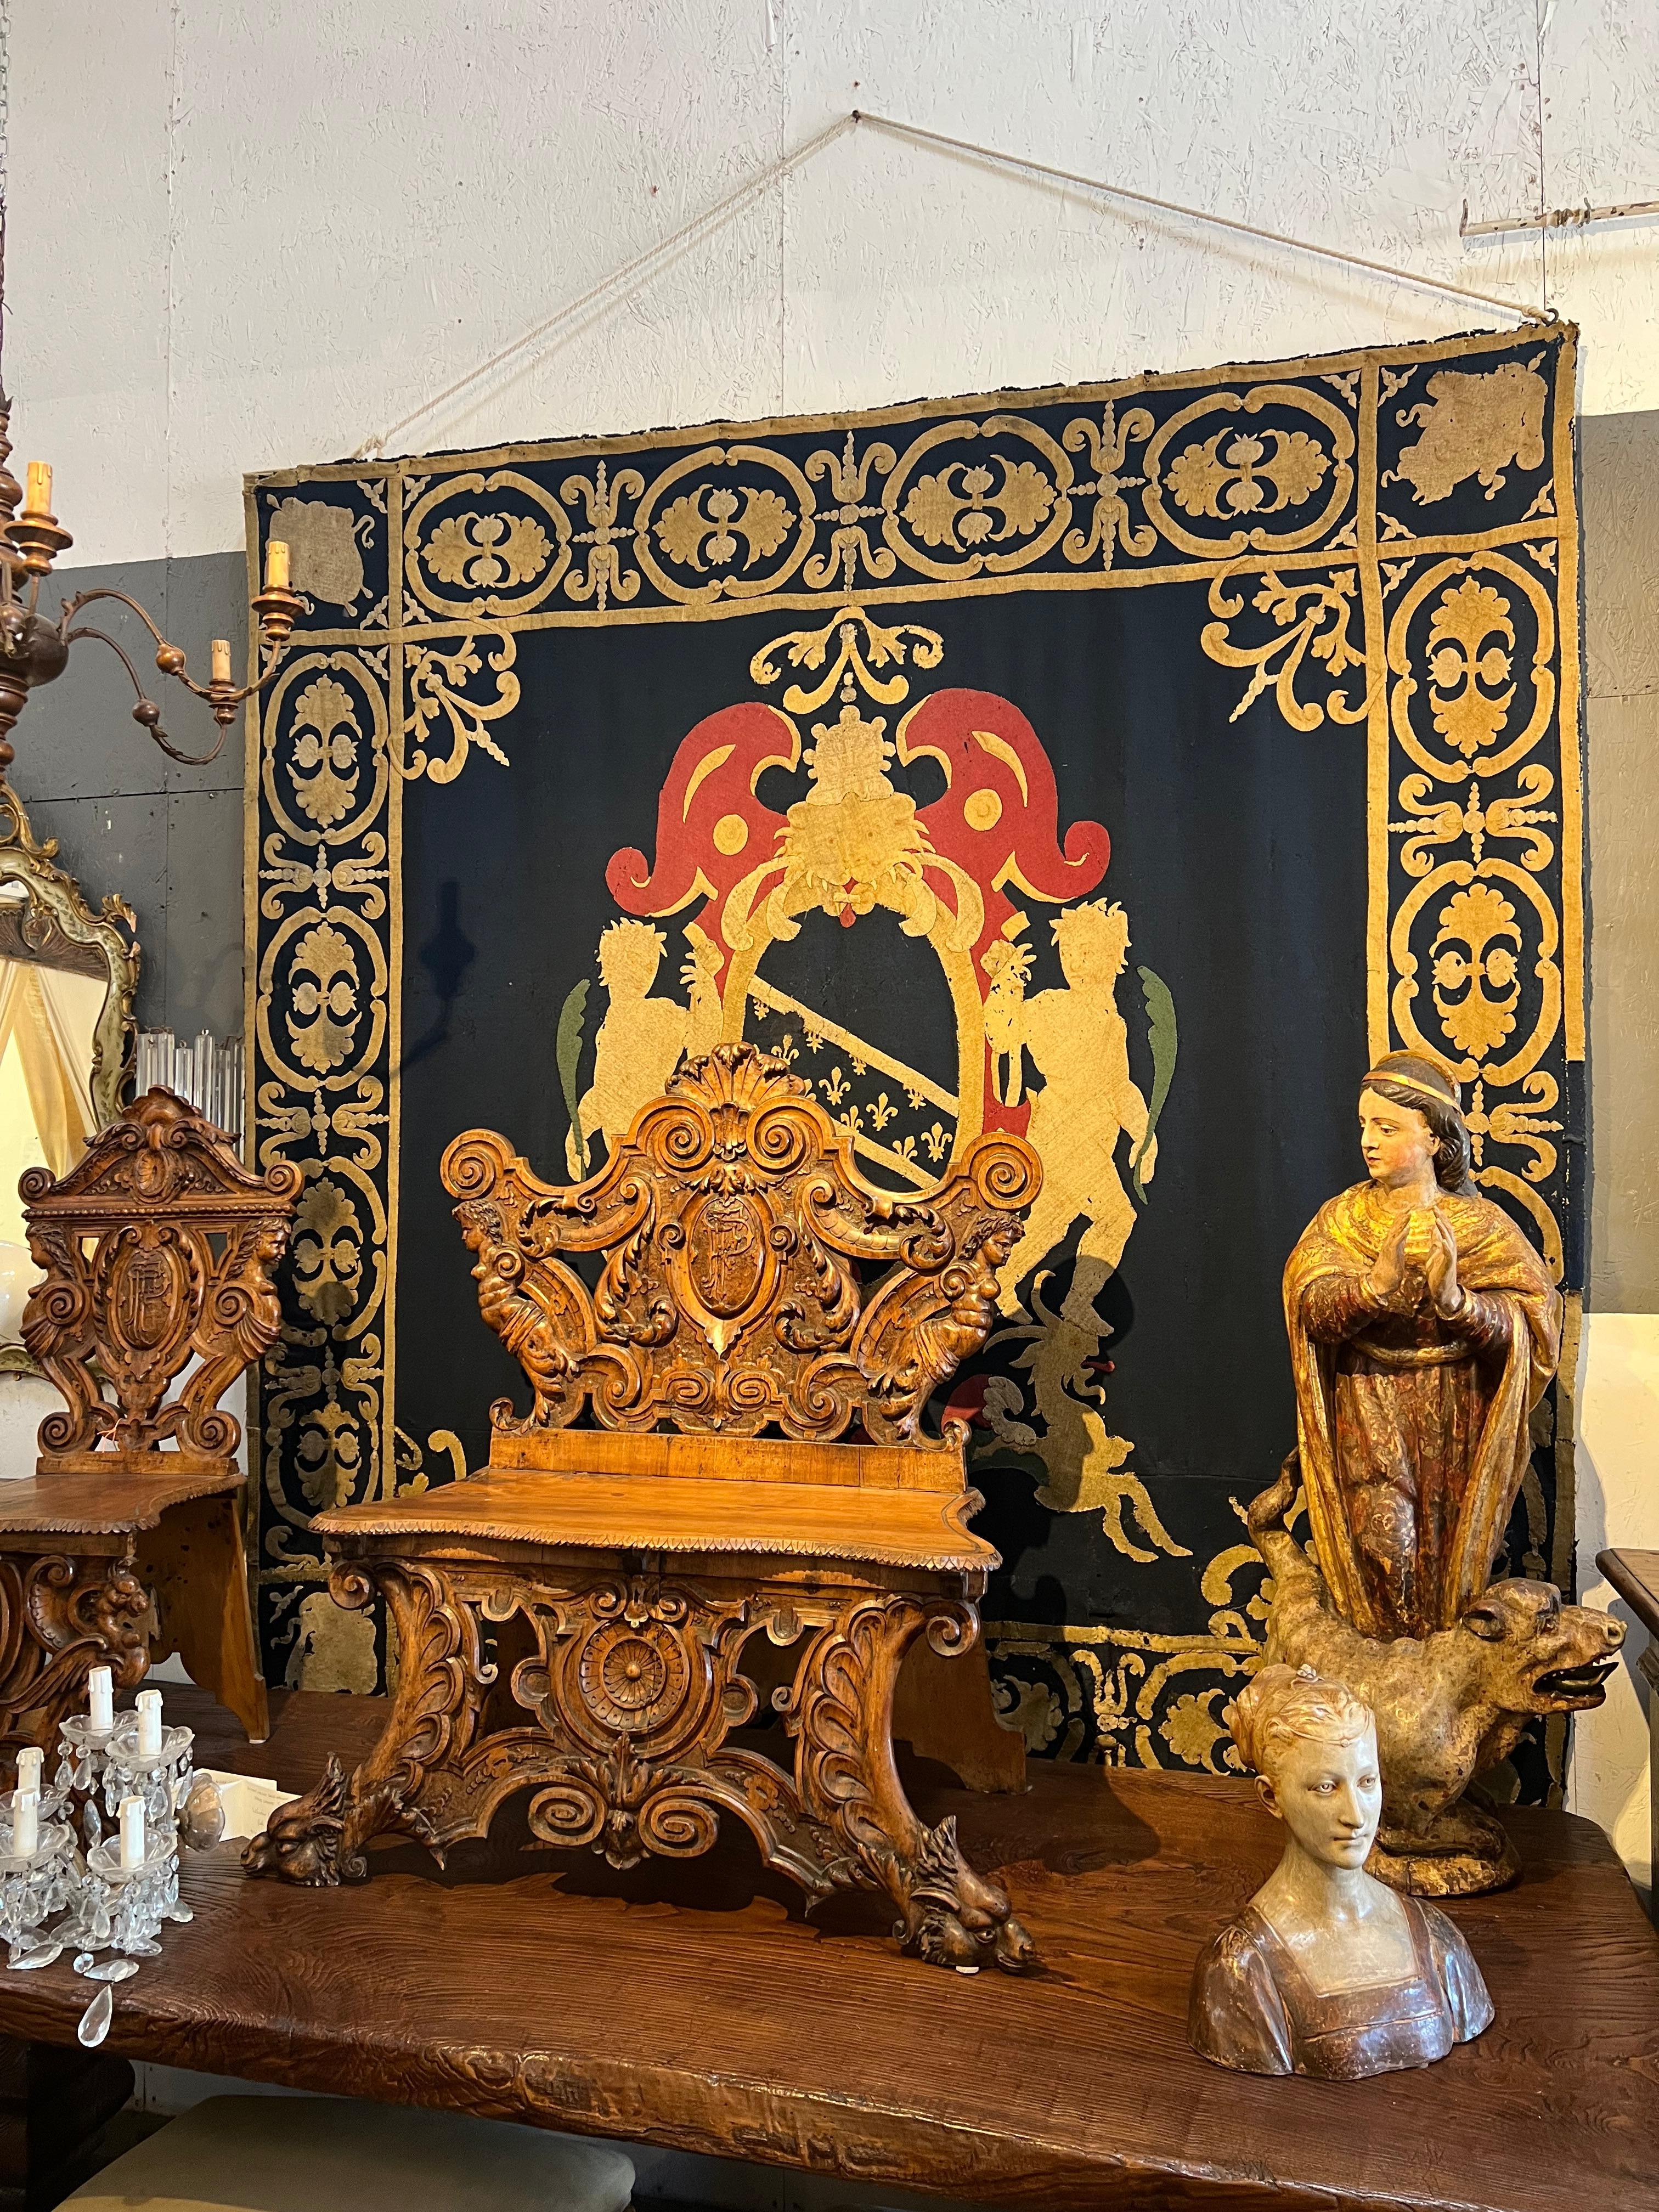 Dieser Wandteppich ist im aristokratischen Stil gehalten und zeigt ein heraldisches Wappen, das aus verschiedenfarbigen Wollstoffen besteht, die als Collage auf blauem Wollstoff angebracht sind. Lucchese (Lucca) Manufaktur aus dem späten 17.